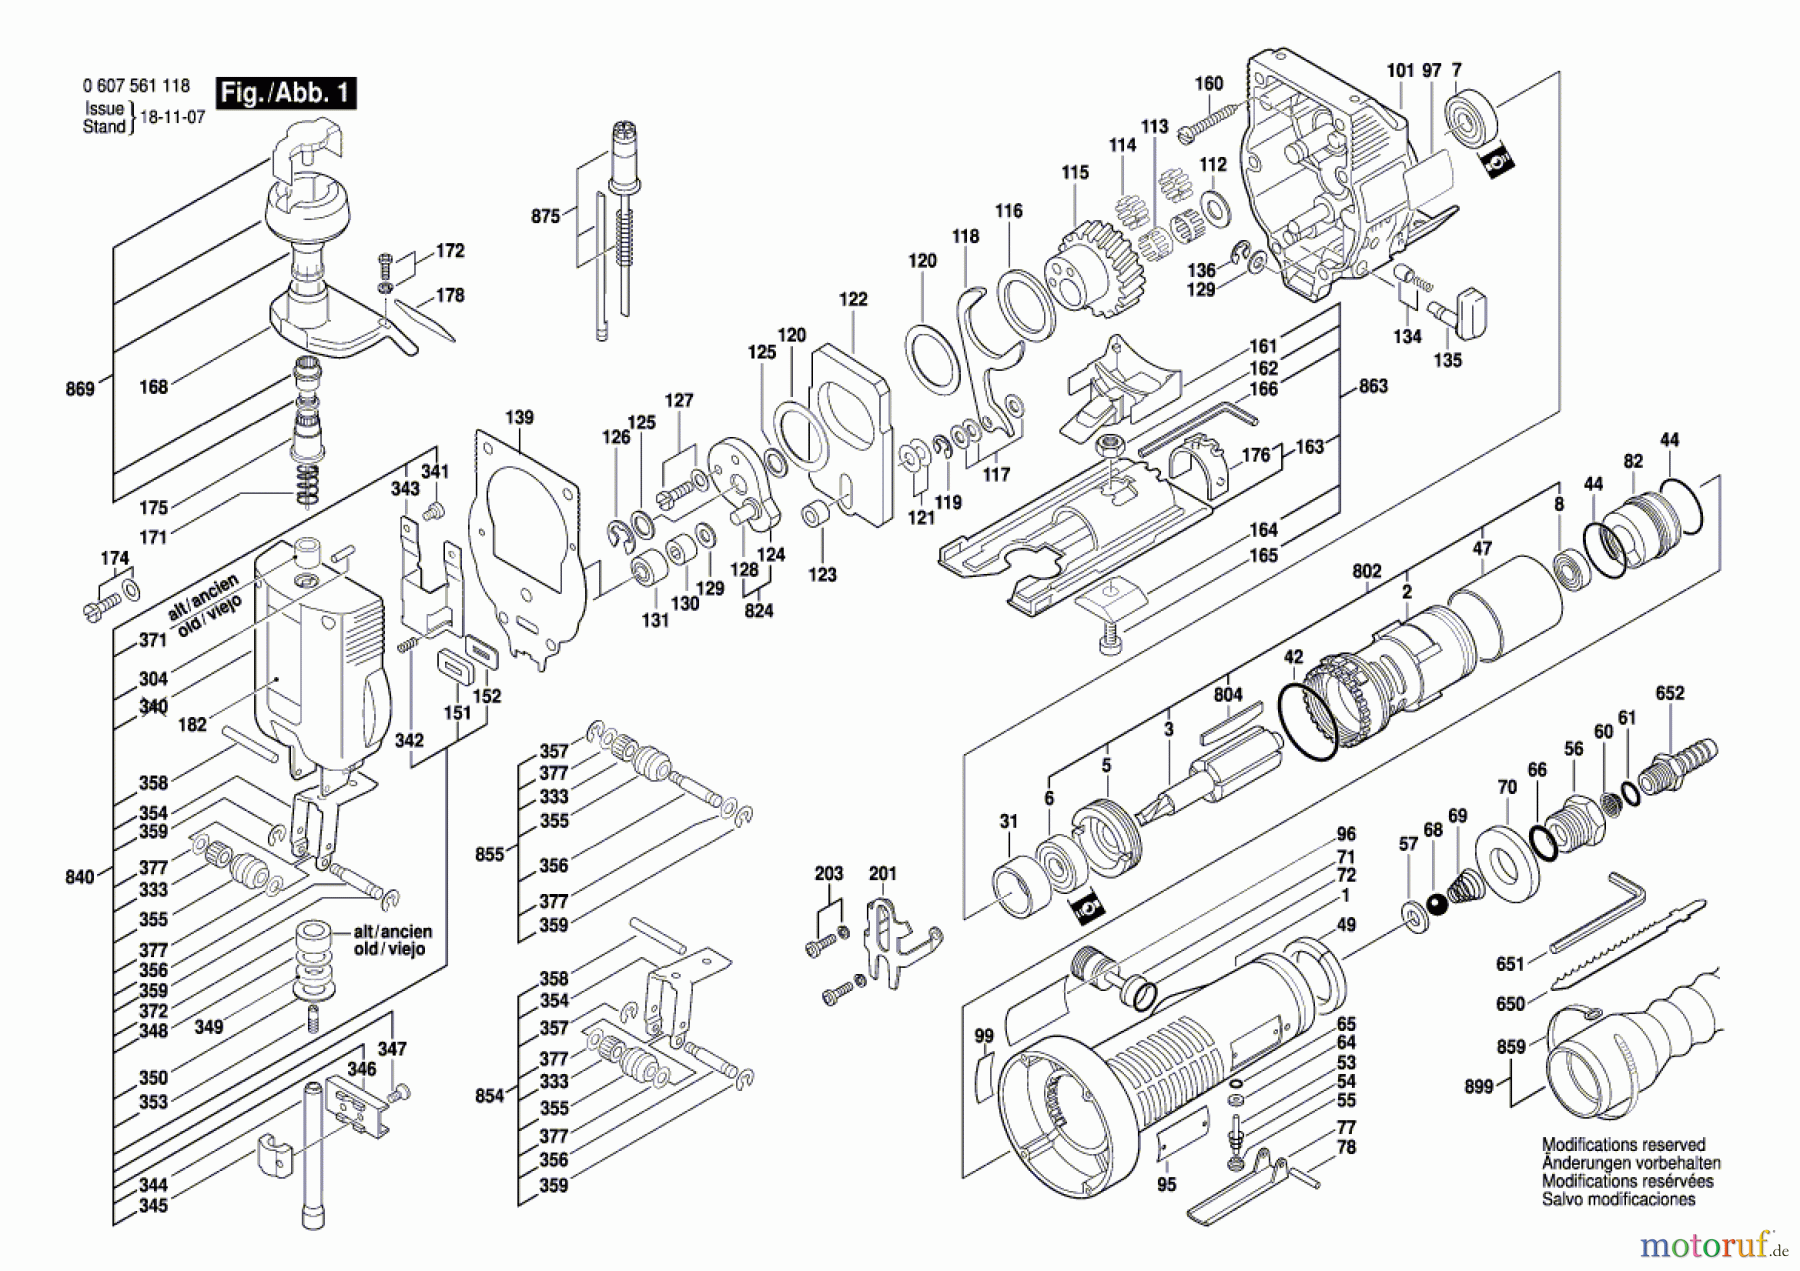  Bosch Werkzeug Pw-Stichsäge 400 WATT-SERIE Seite 1